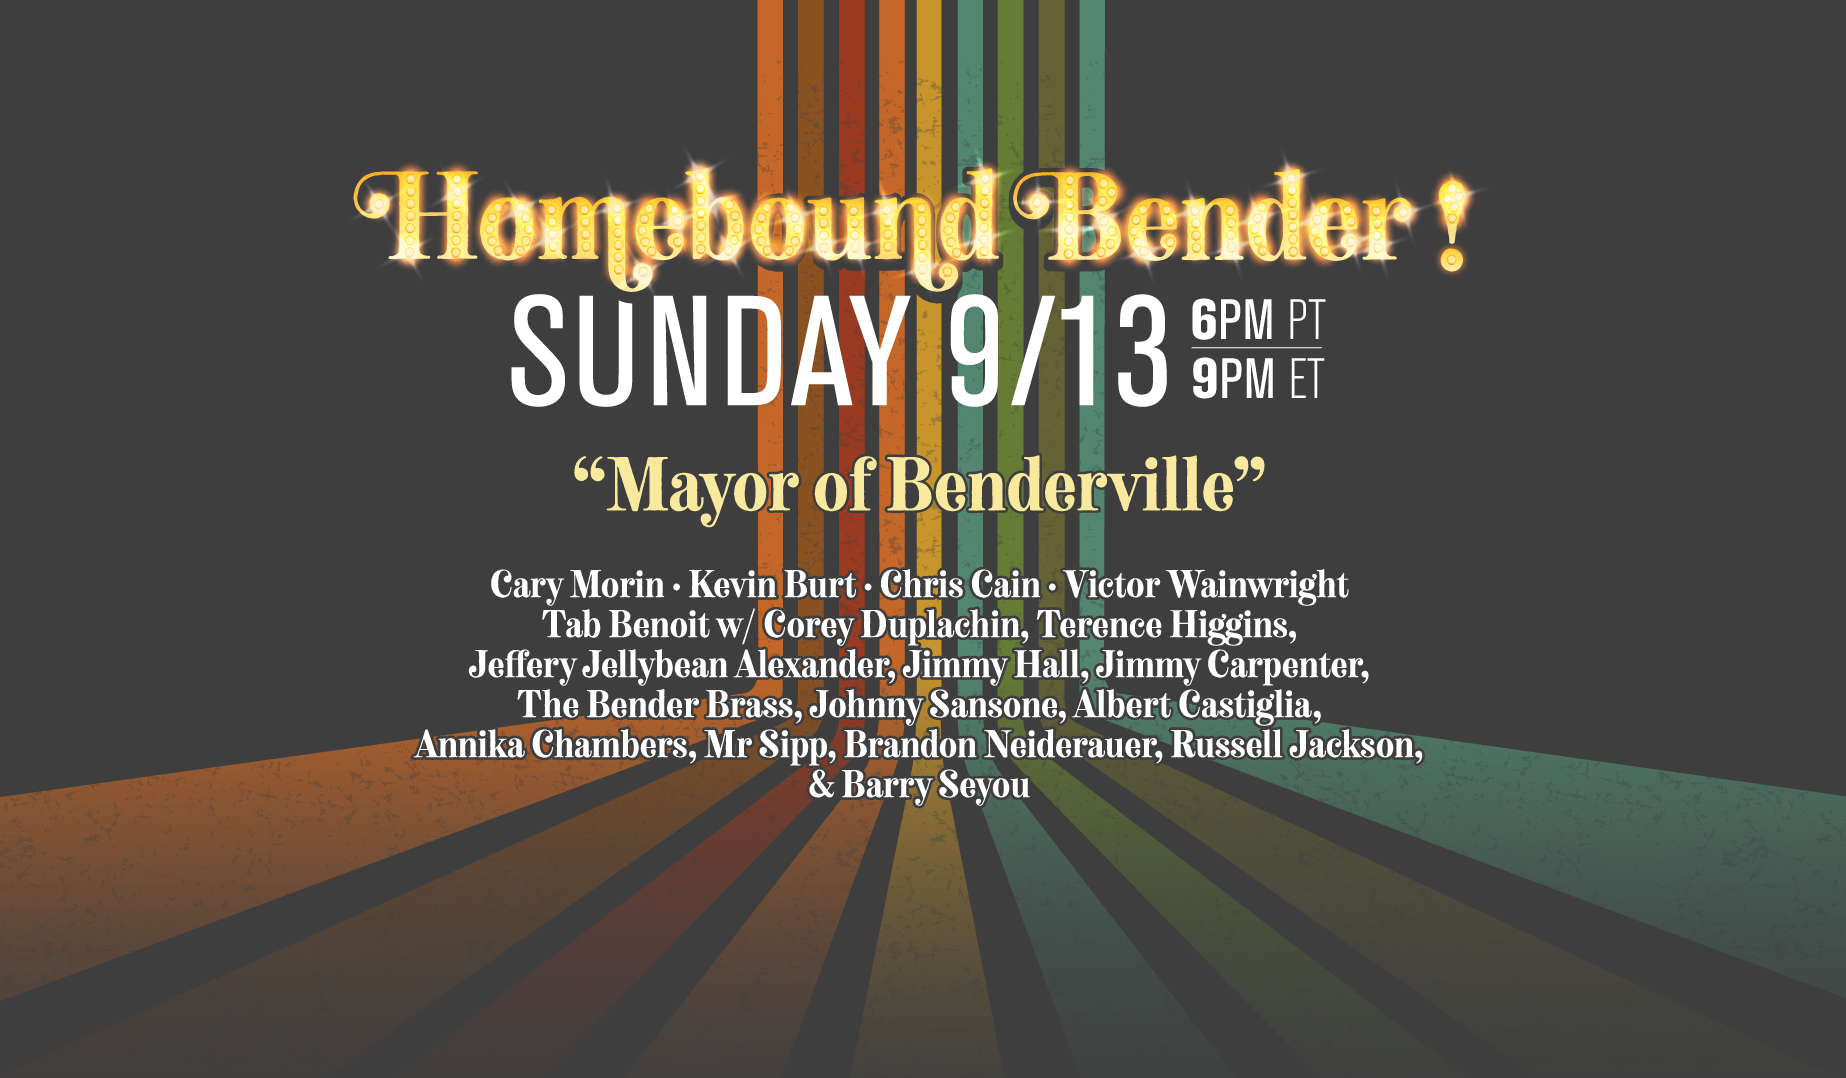 2020 Homebound Bender Schedule 9-13-20